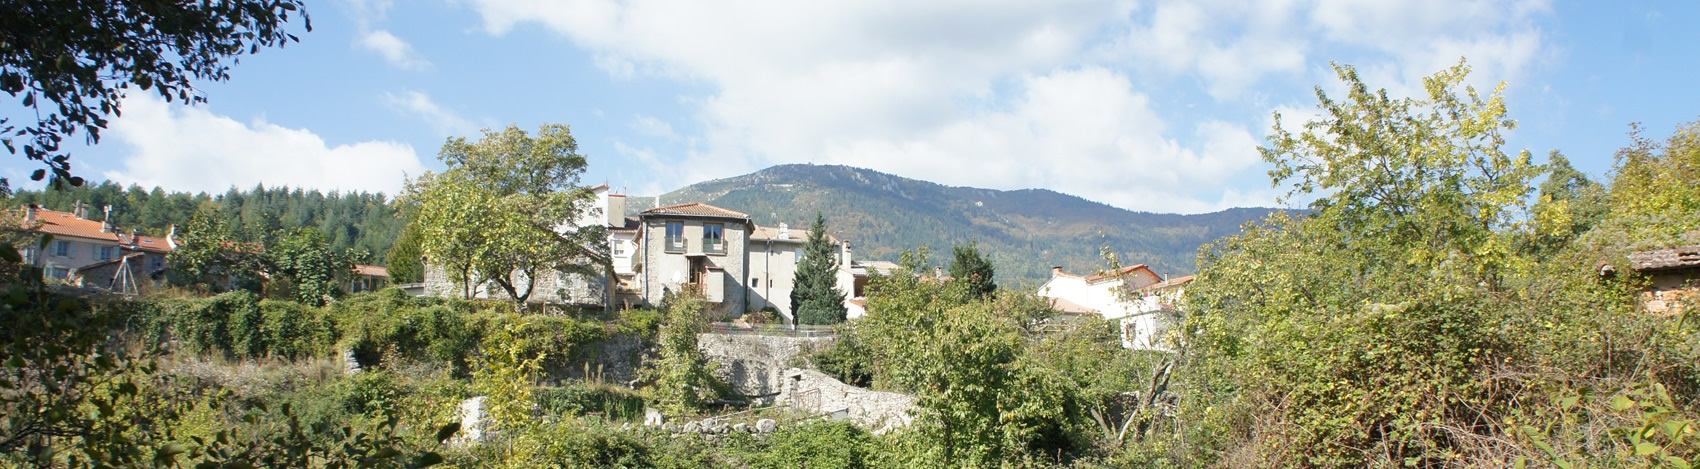 Le village de Génolhac est situé au pied du Mont Lozère sur les bords de la Gardonnette dans le Gard (Occitanie)